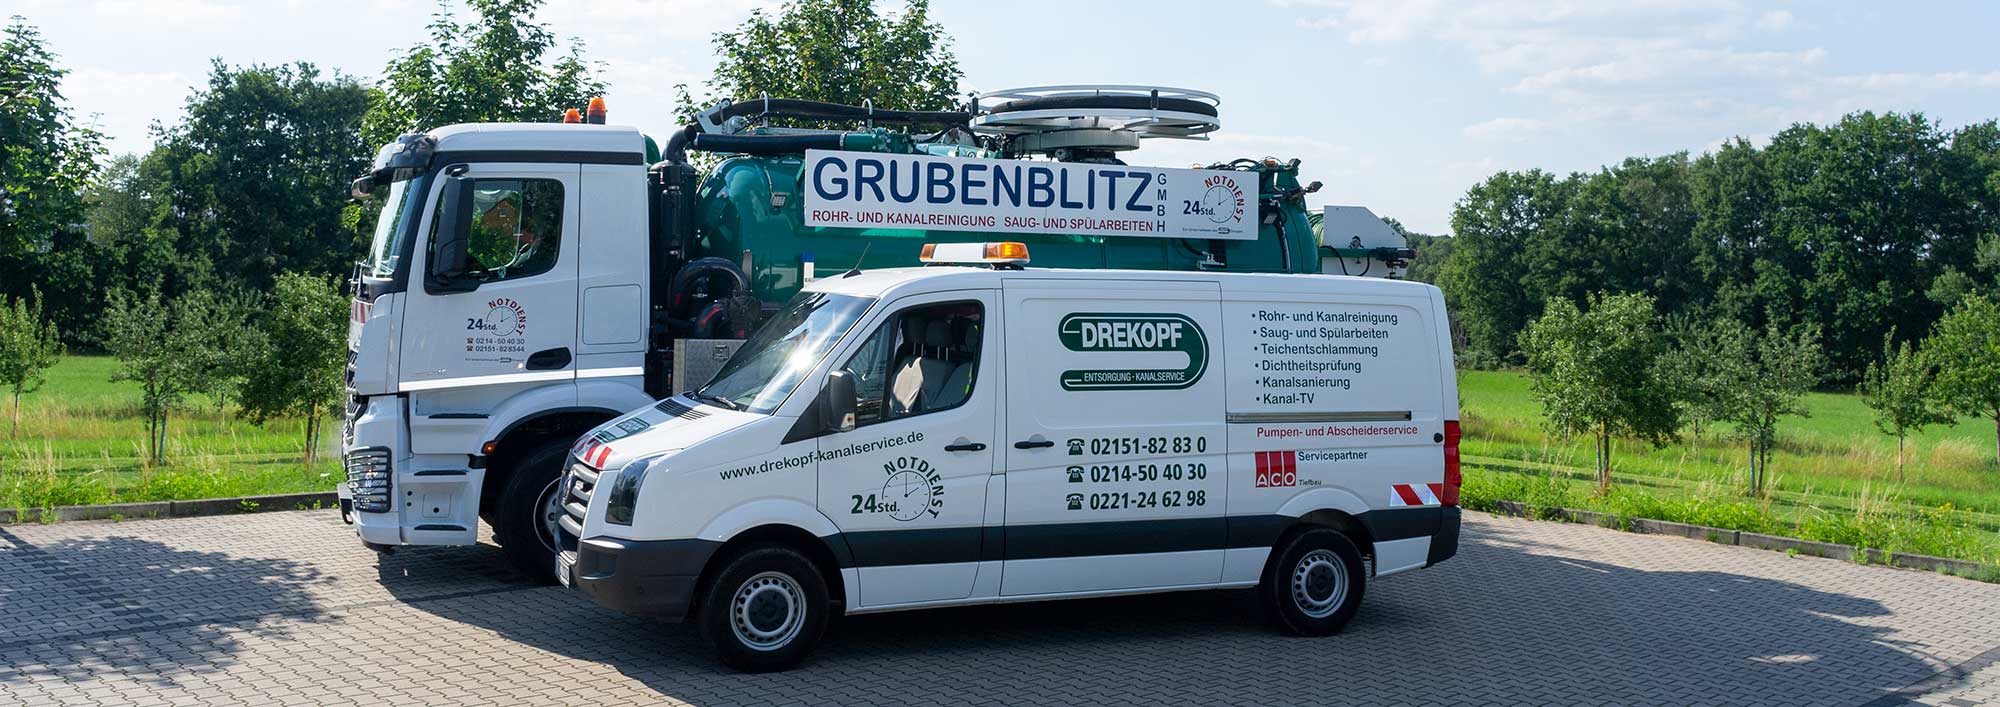 Dienstfahrzeuge der Firma Drekopf und Grubenblitz